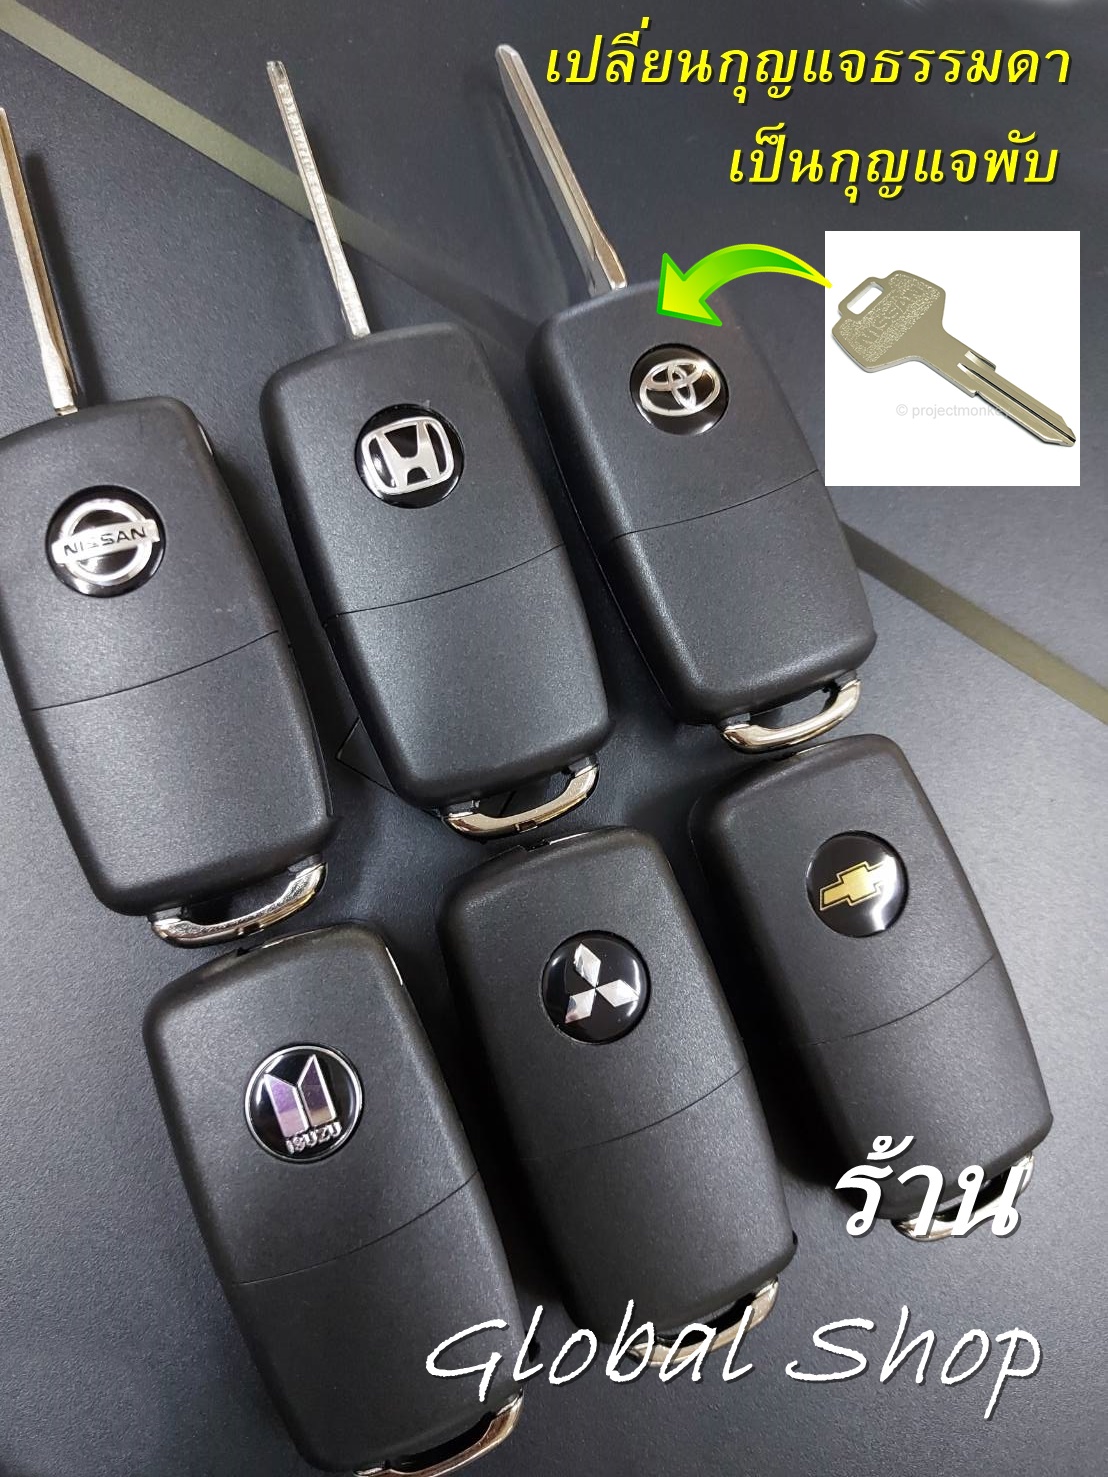 กุญแจพับ สำหรับรถที่ไม่มีรีโมทแต่ ต้องการเปลี่ยนกุญแจให้เป็น แบบพับได้อย่างเดียว